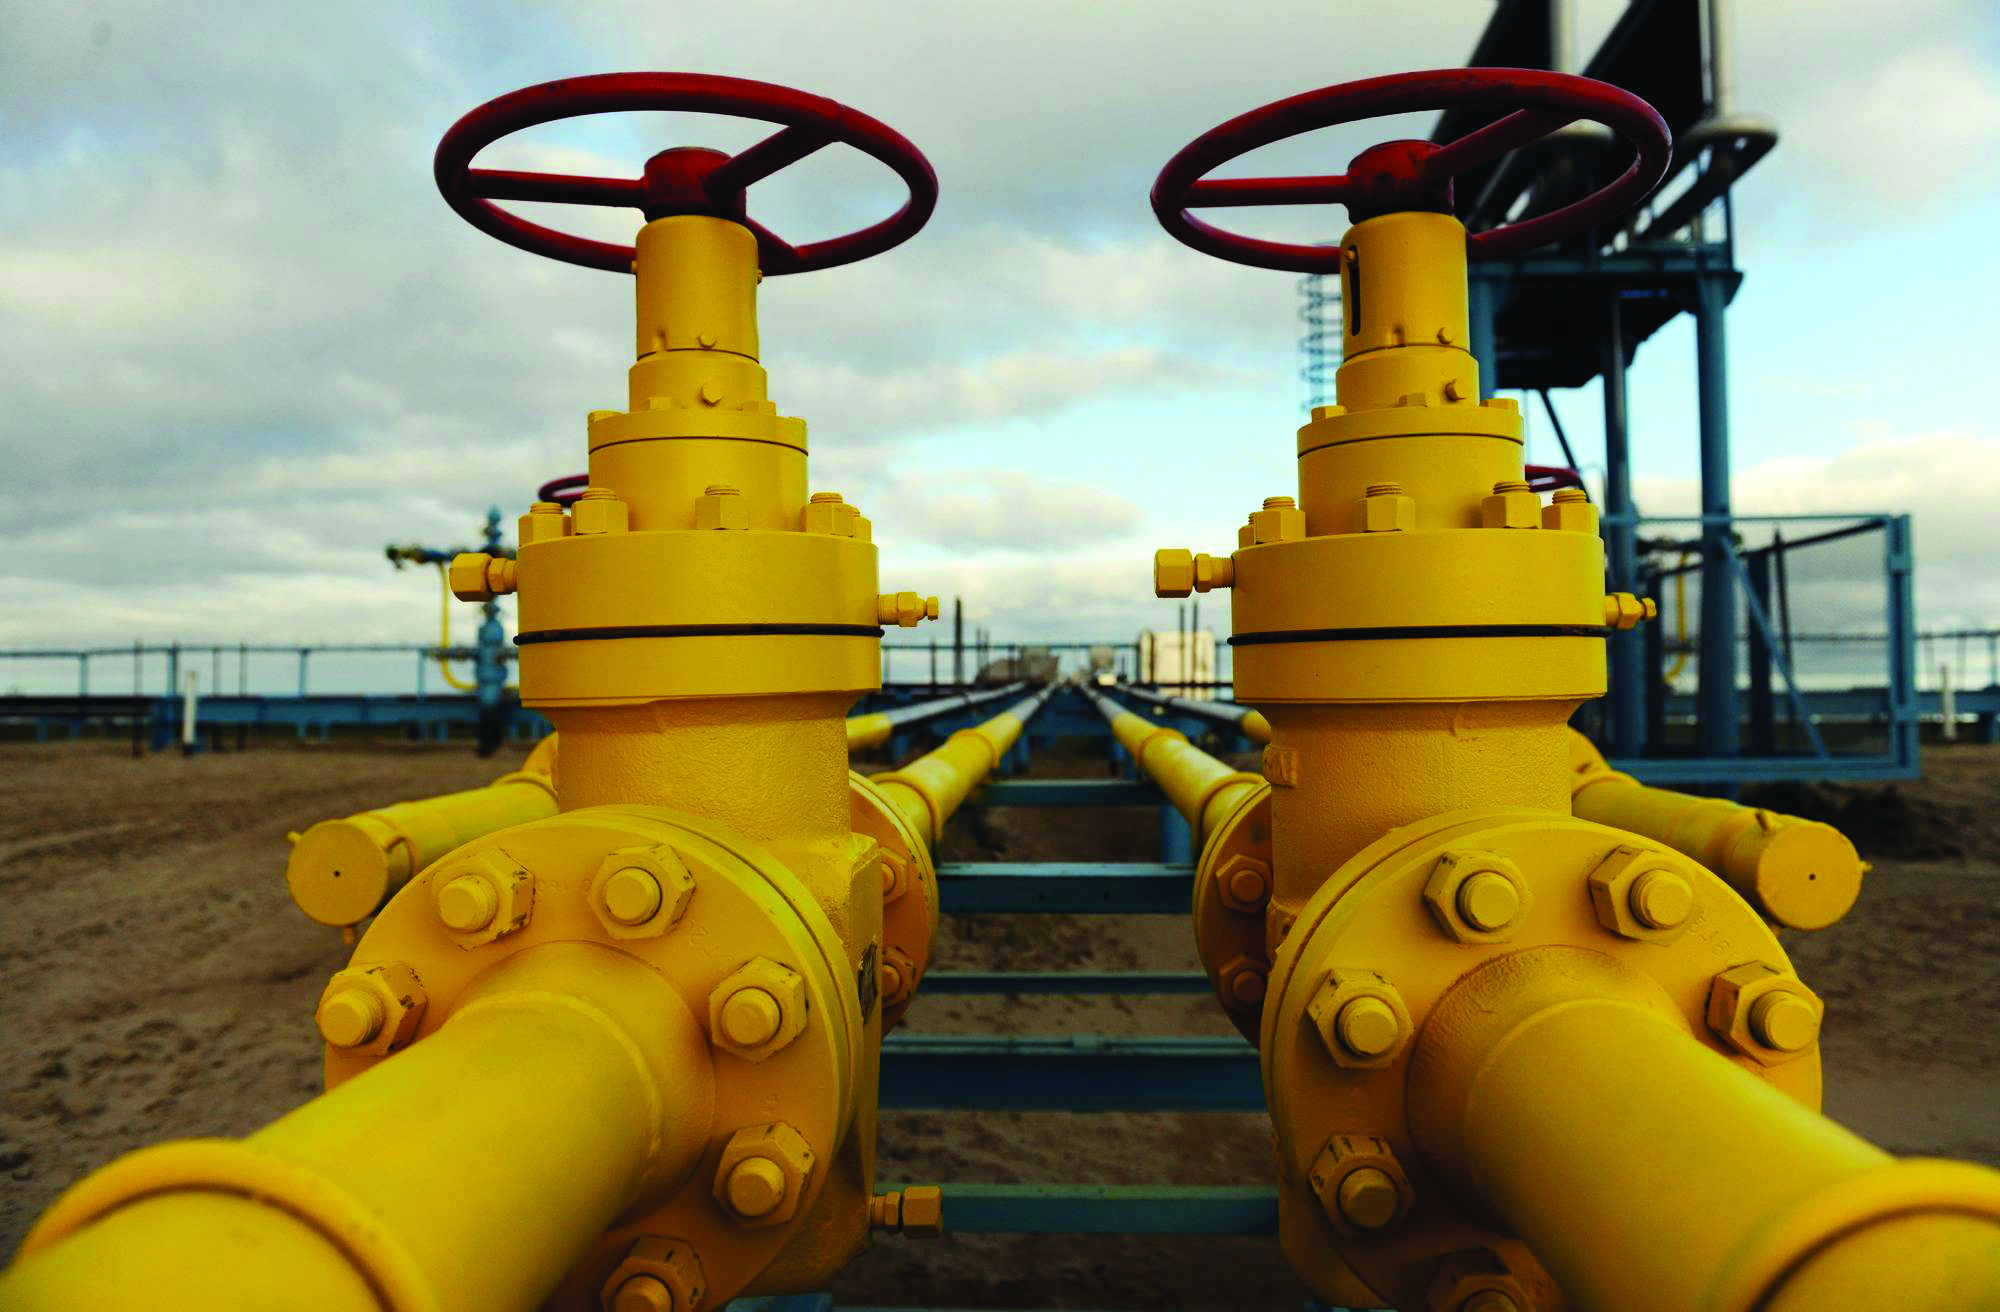 Gazprom, Ukrayna lehine verilen tahkim kararına itiraz etti